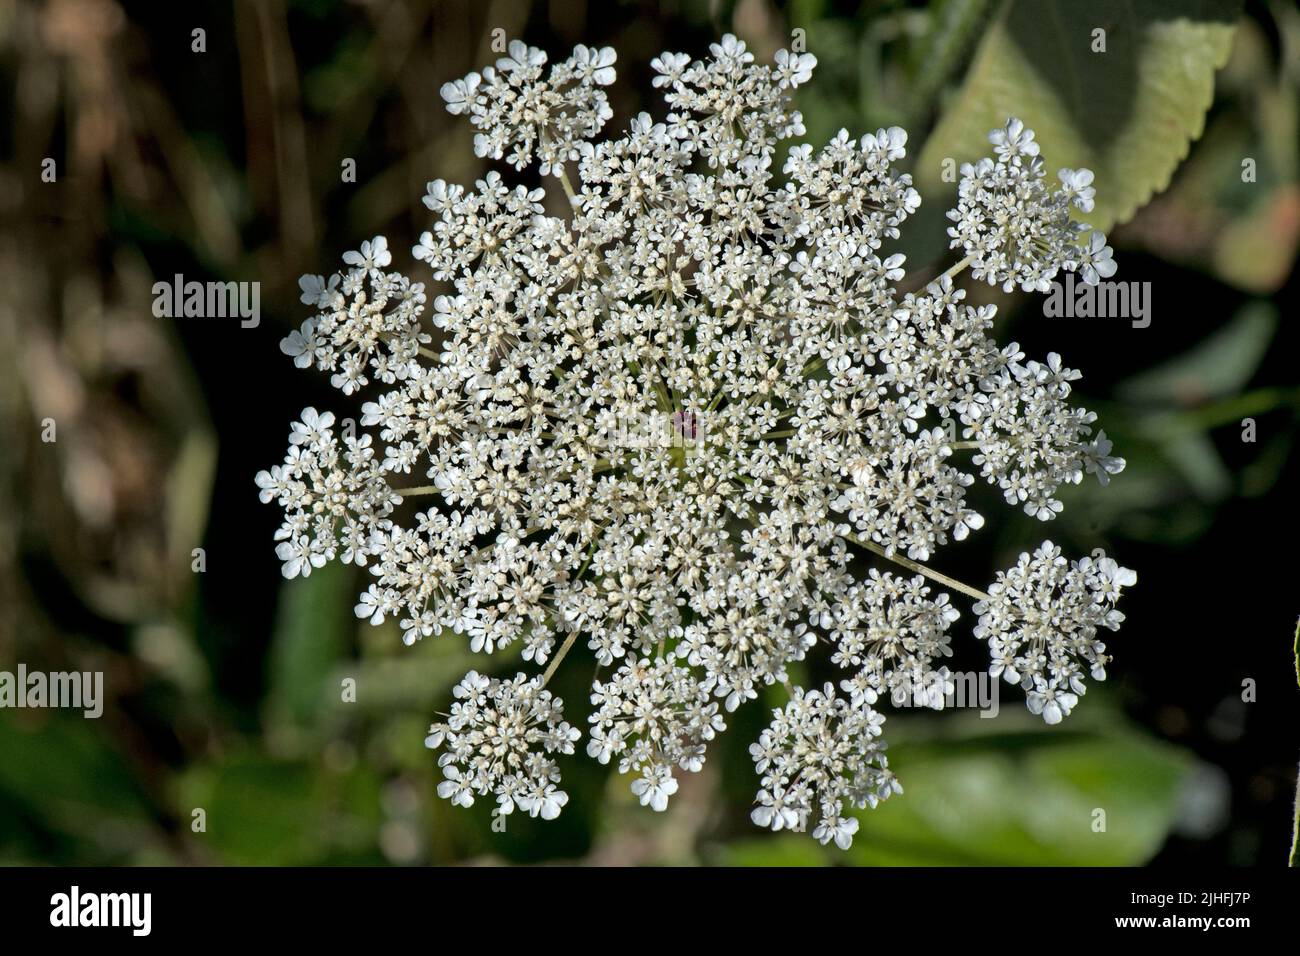 Carotte sauvage ou dentelle de la reine Anne (Daucus carota) fleuret de fleurs blanches avec un seul nectar produisant une fleur rouge foncé, Berkshire, juillet Banque D'Images